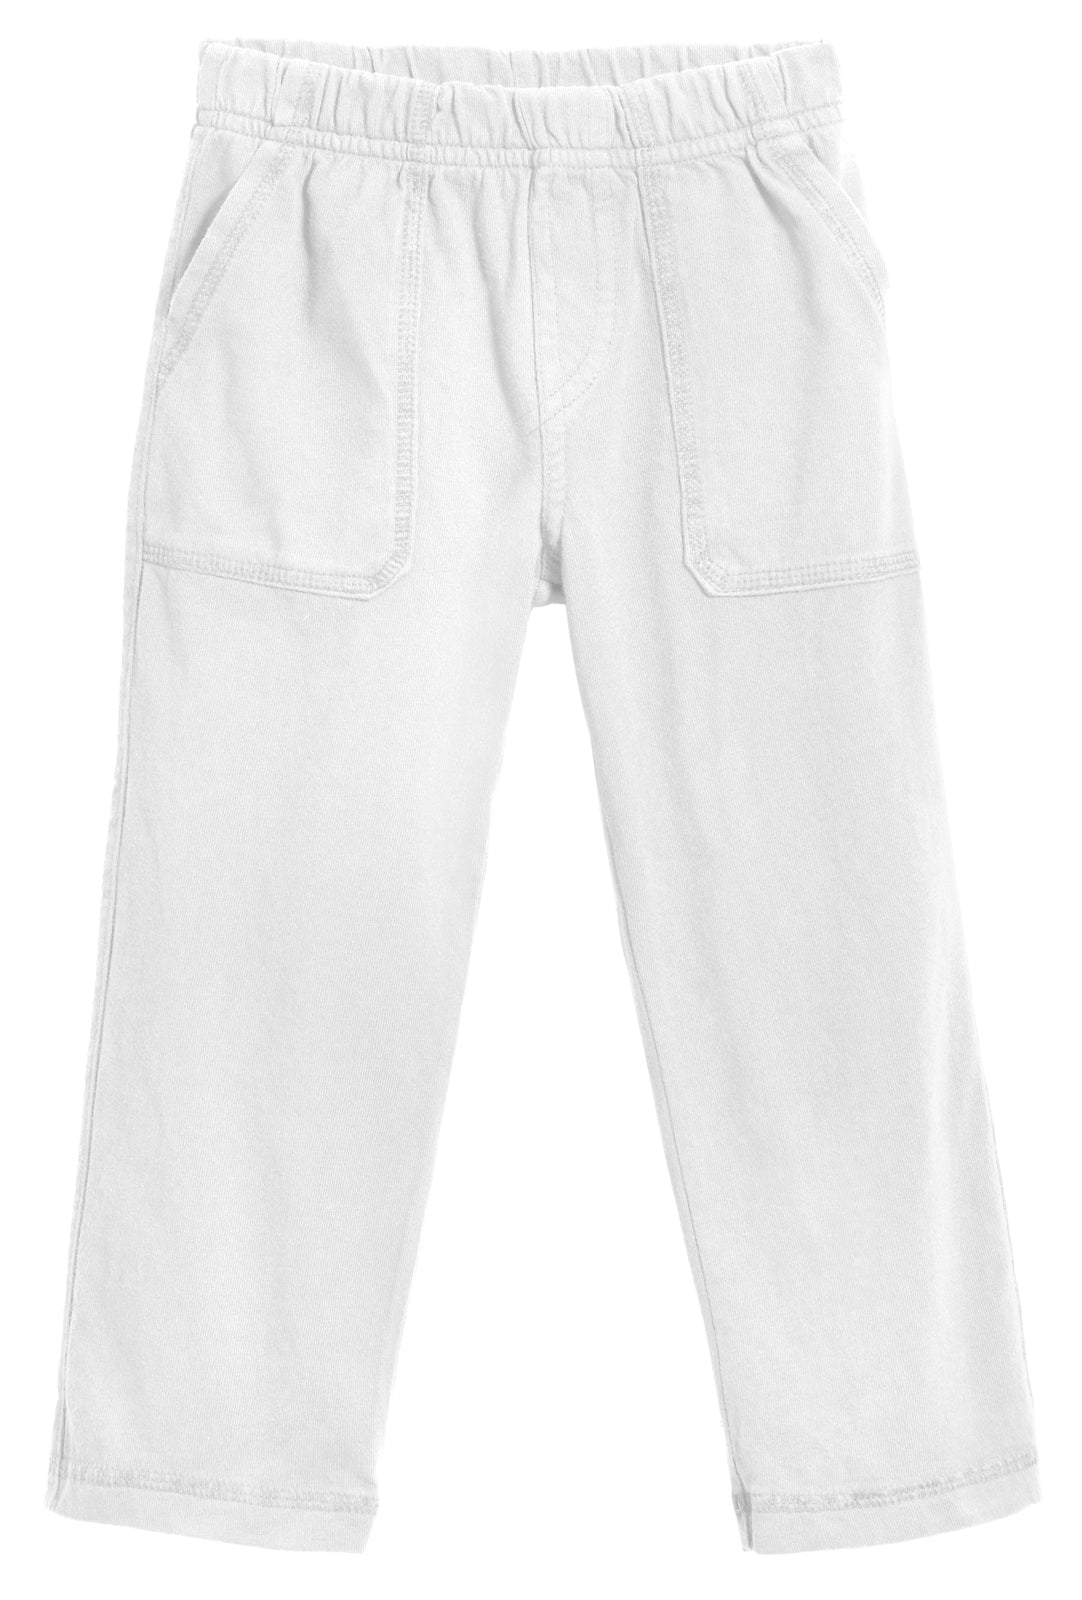 Boys Soft Cotton 3-Pocket Jersey Pants - UPF 50+ | White